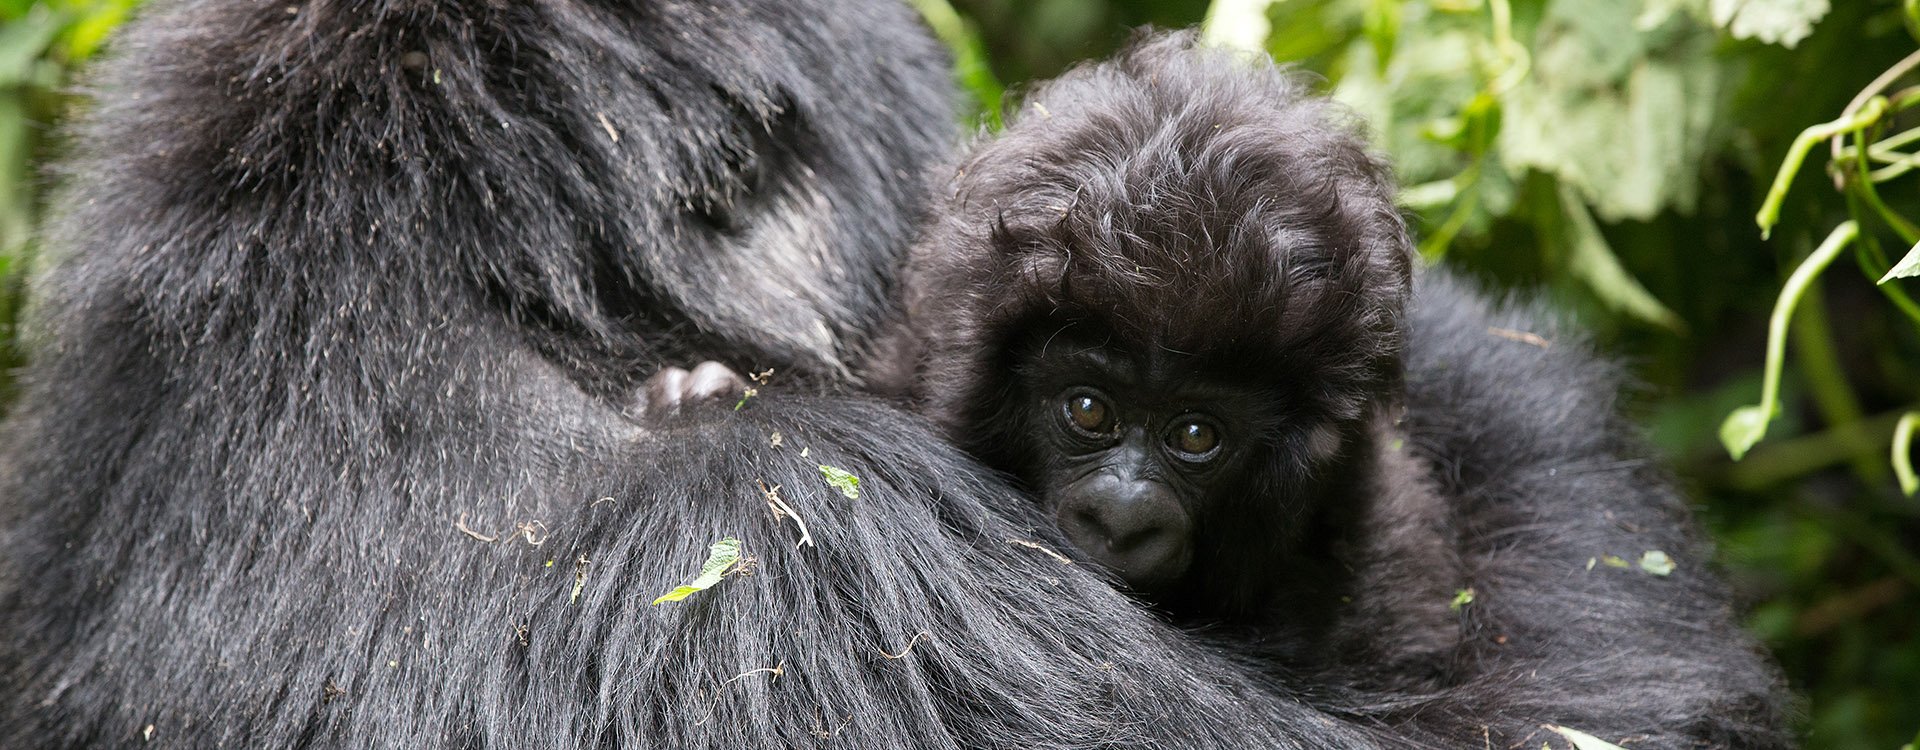 Mum and baby gorilla 